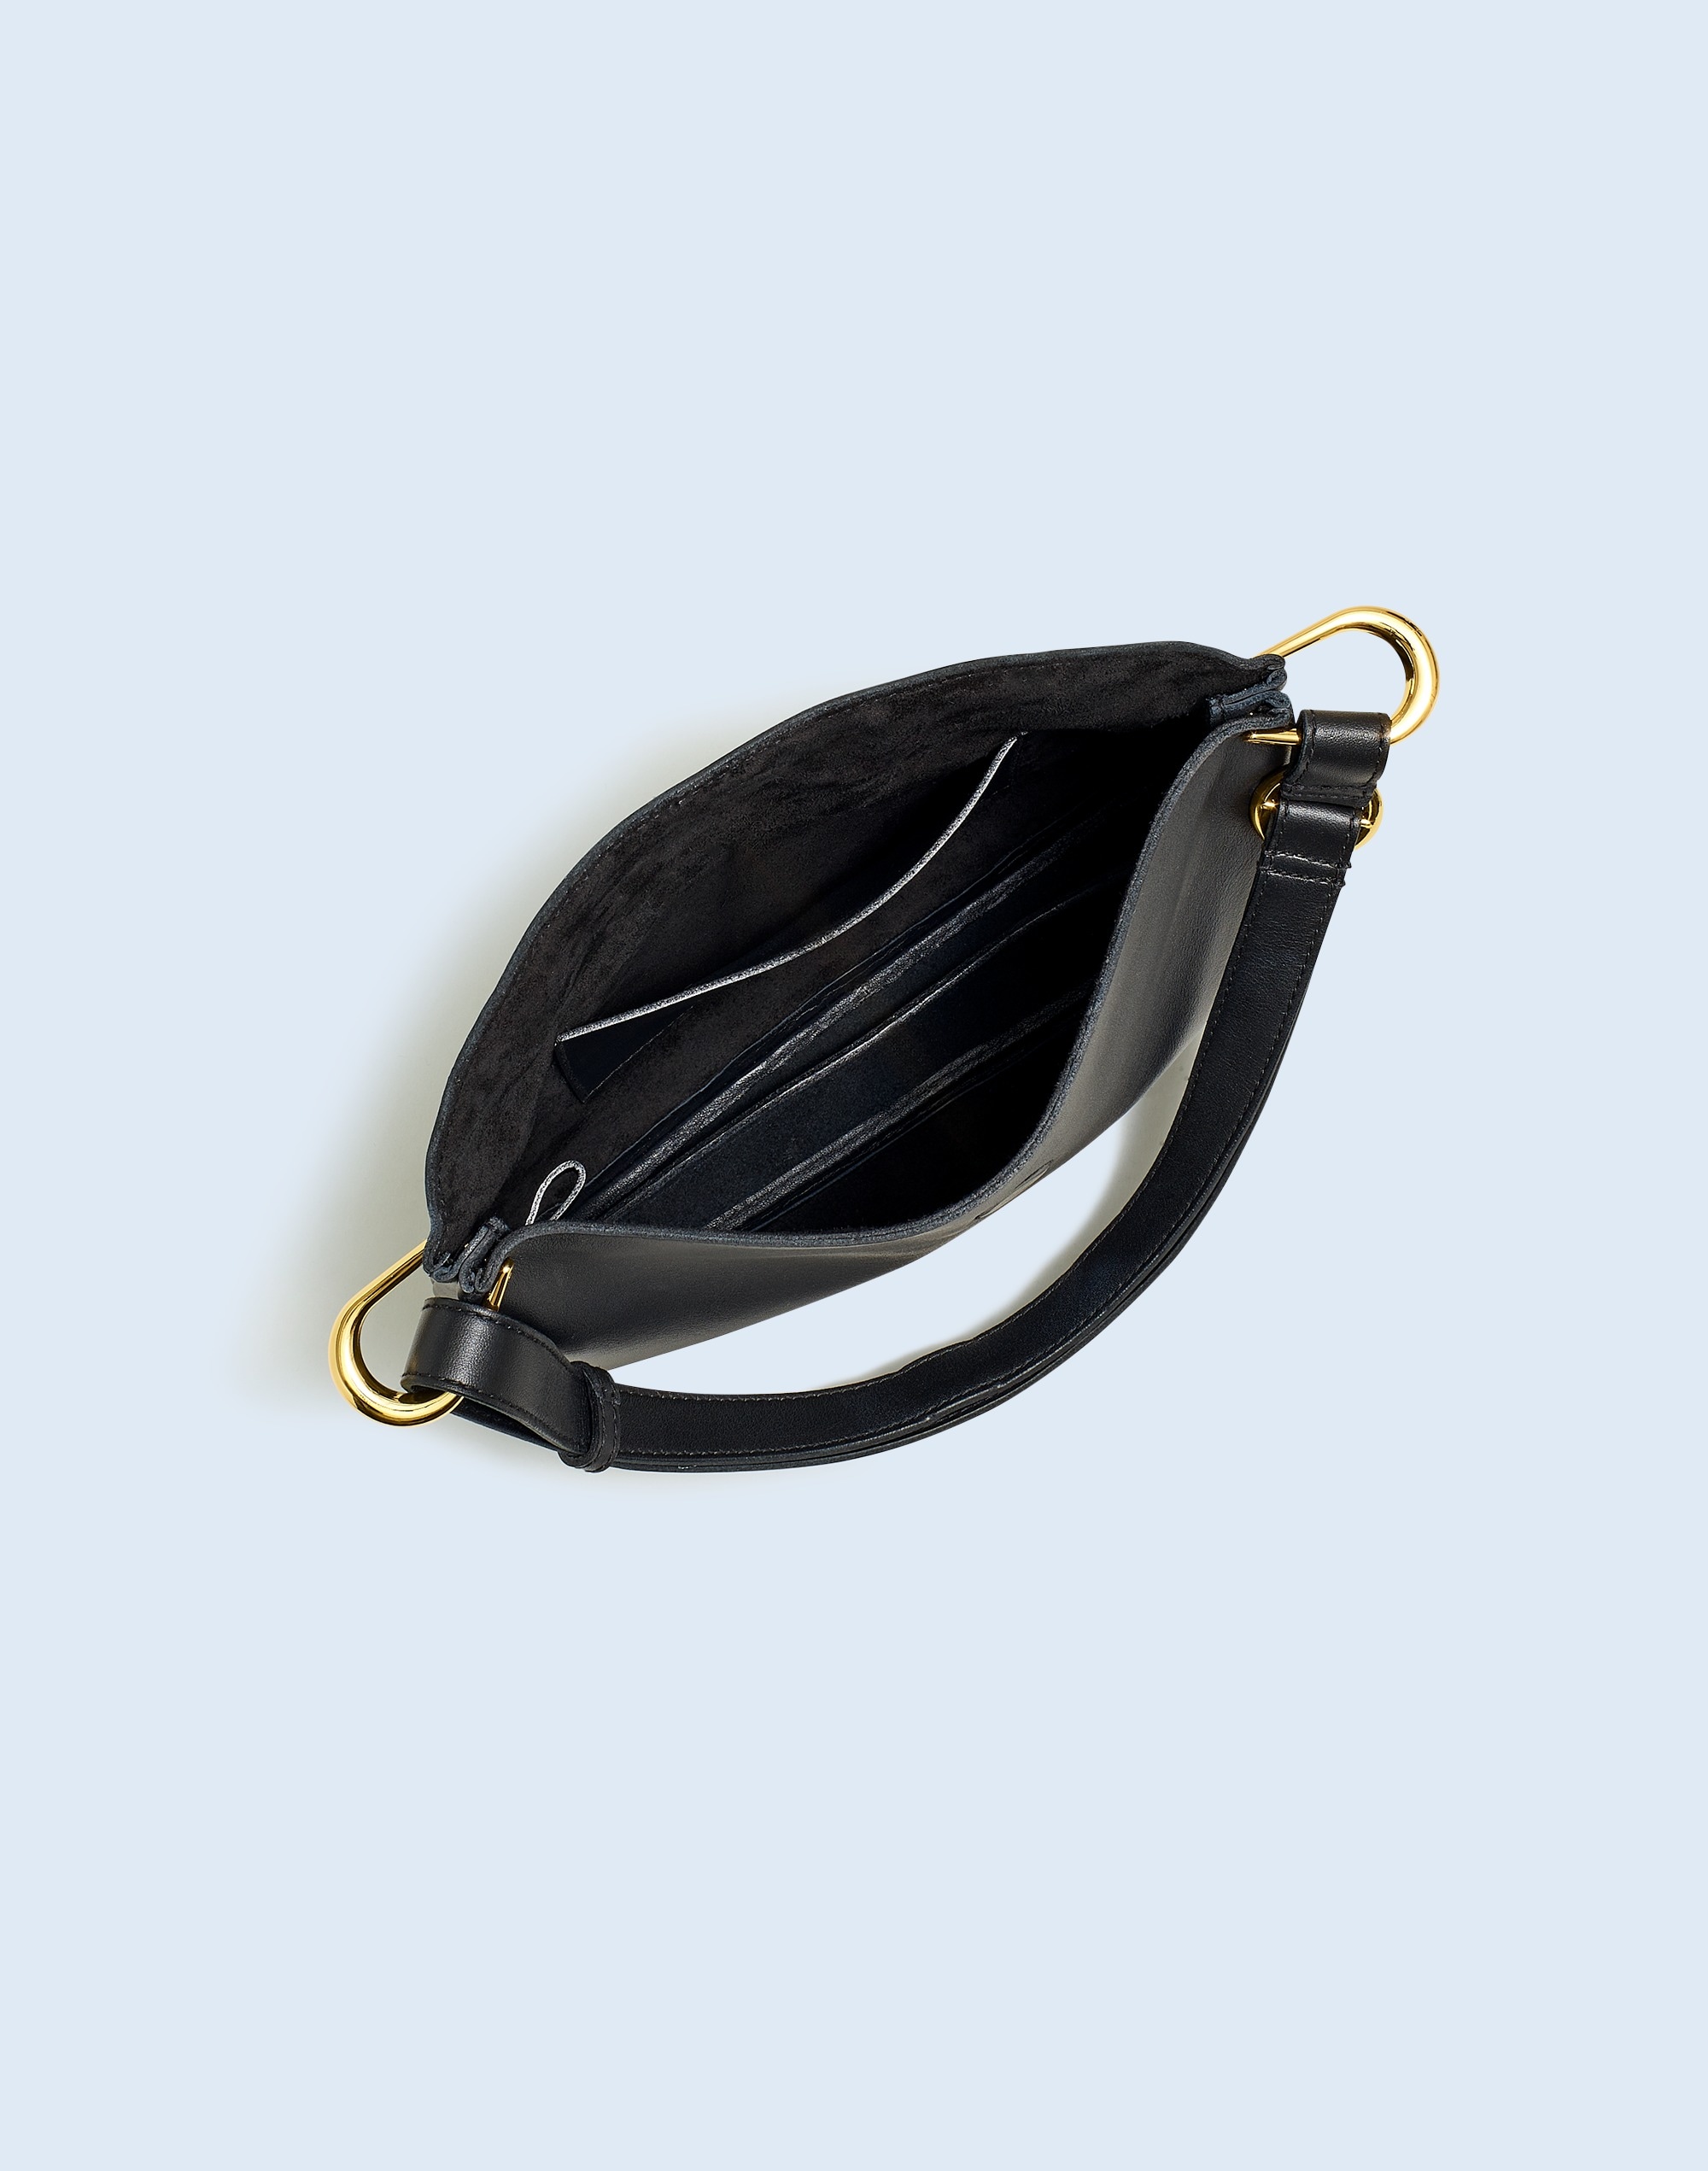 The Foldover-Flap Shoulder Bag